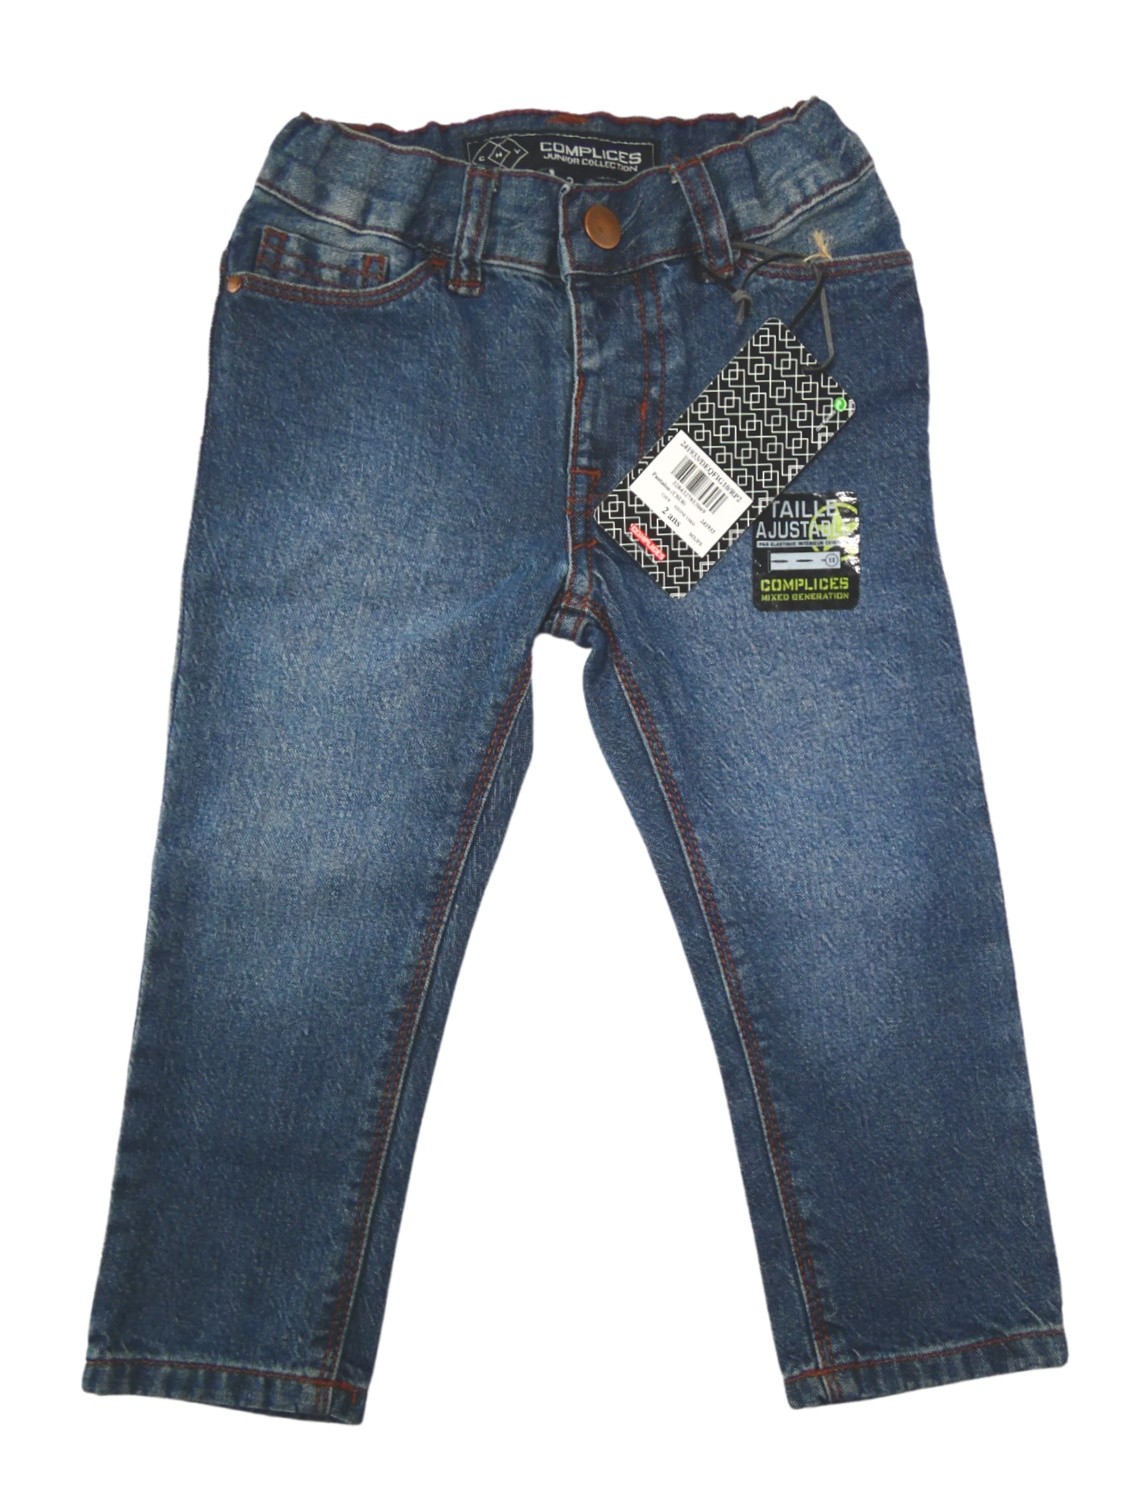 Pantalon jeans COMPLICES taille 24 mois